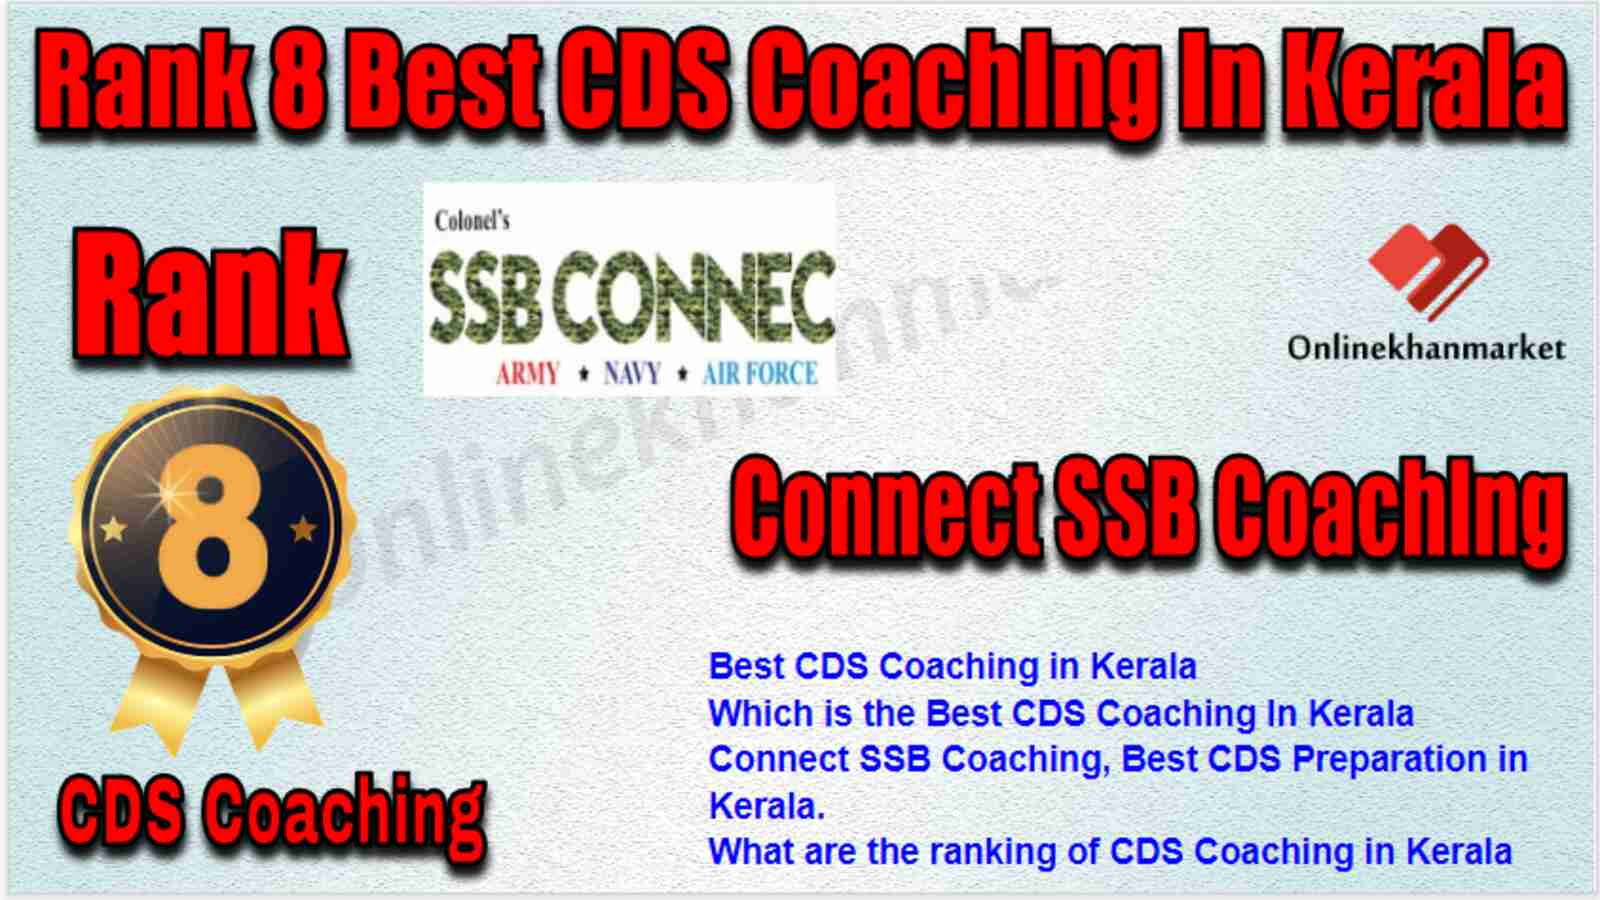 Rank 8 best CDS Coaching in Kerala